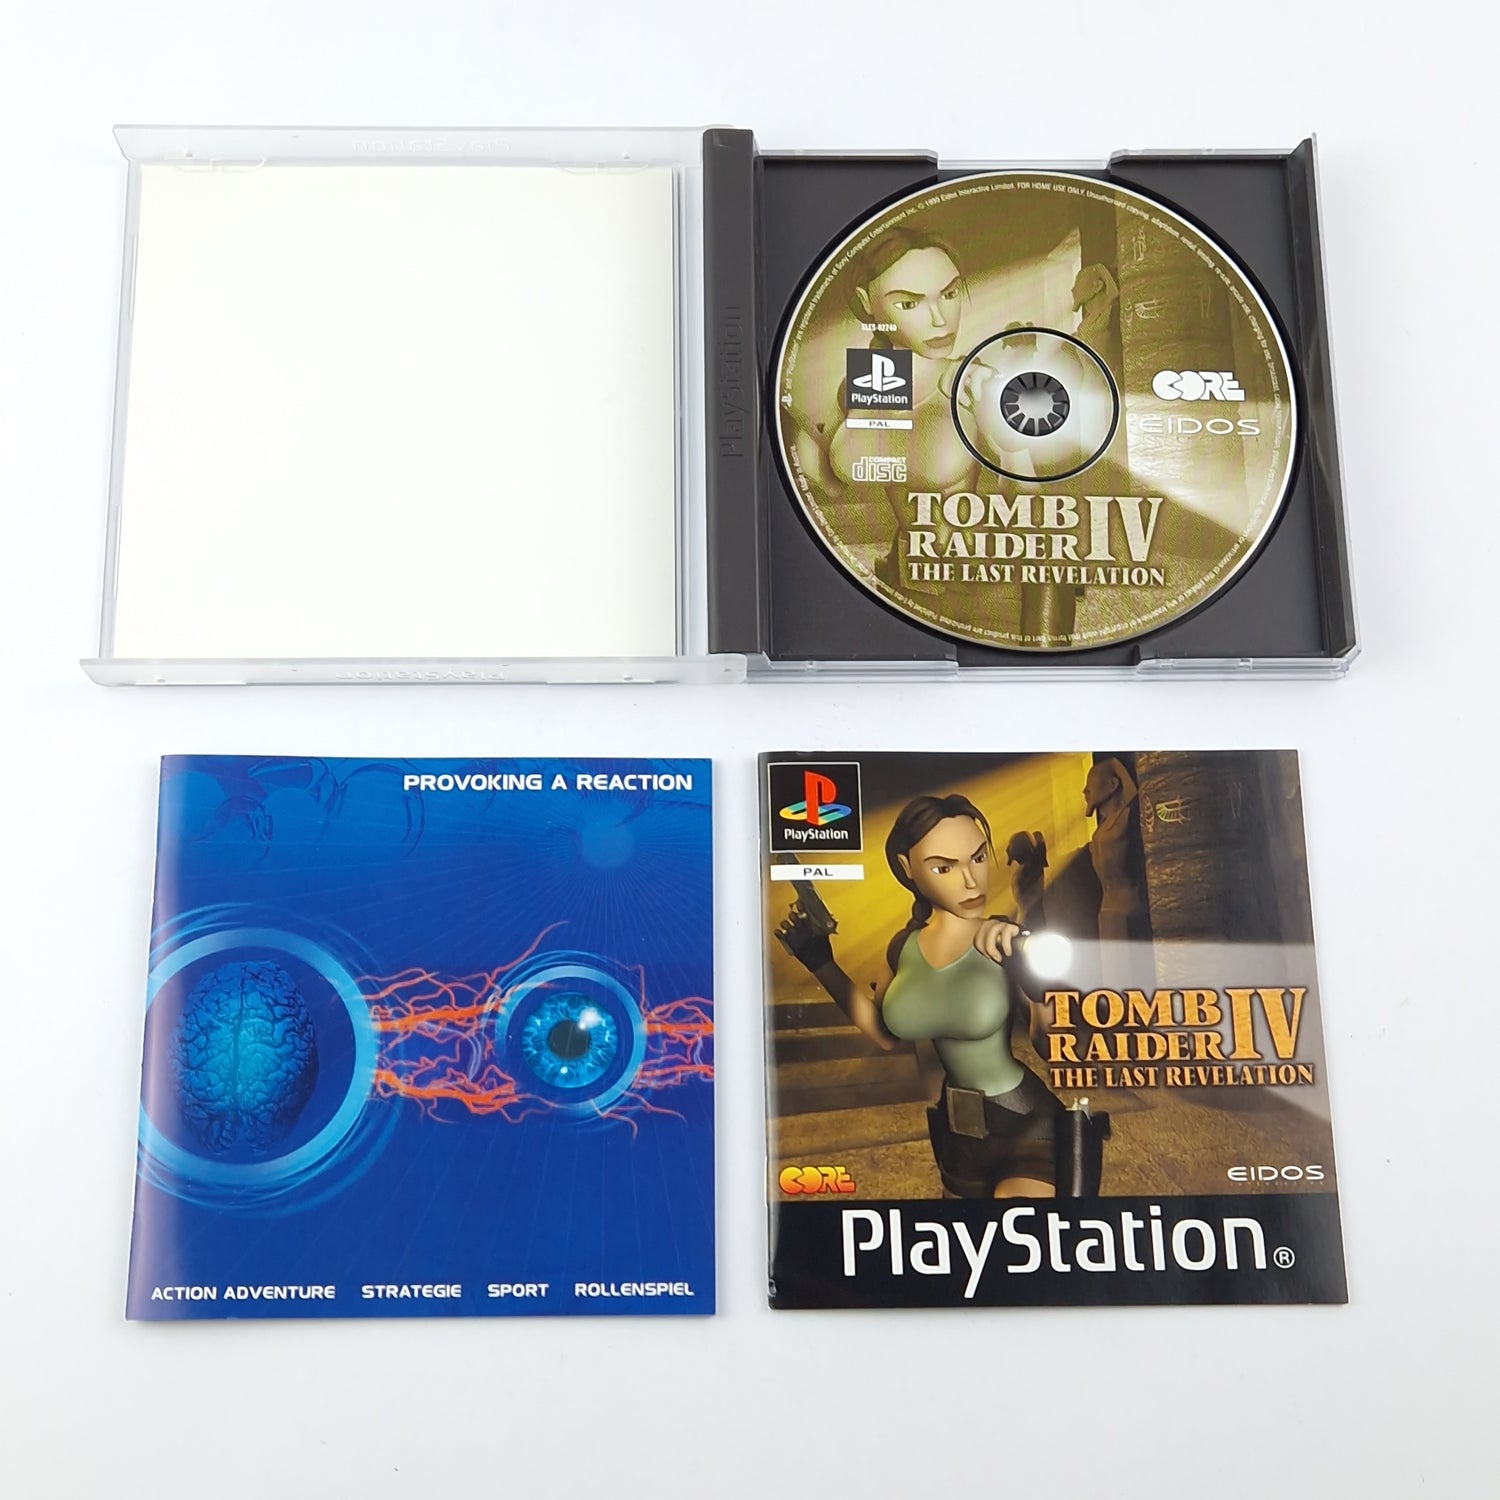 Playstation 1 Spiele Bundle : Tomb Raider III & IV im SET - PS1 OVP Lara Croft